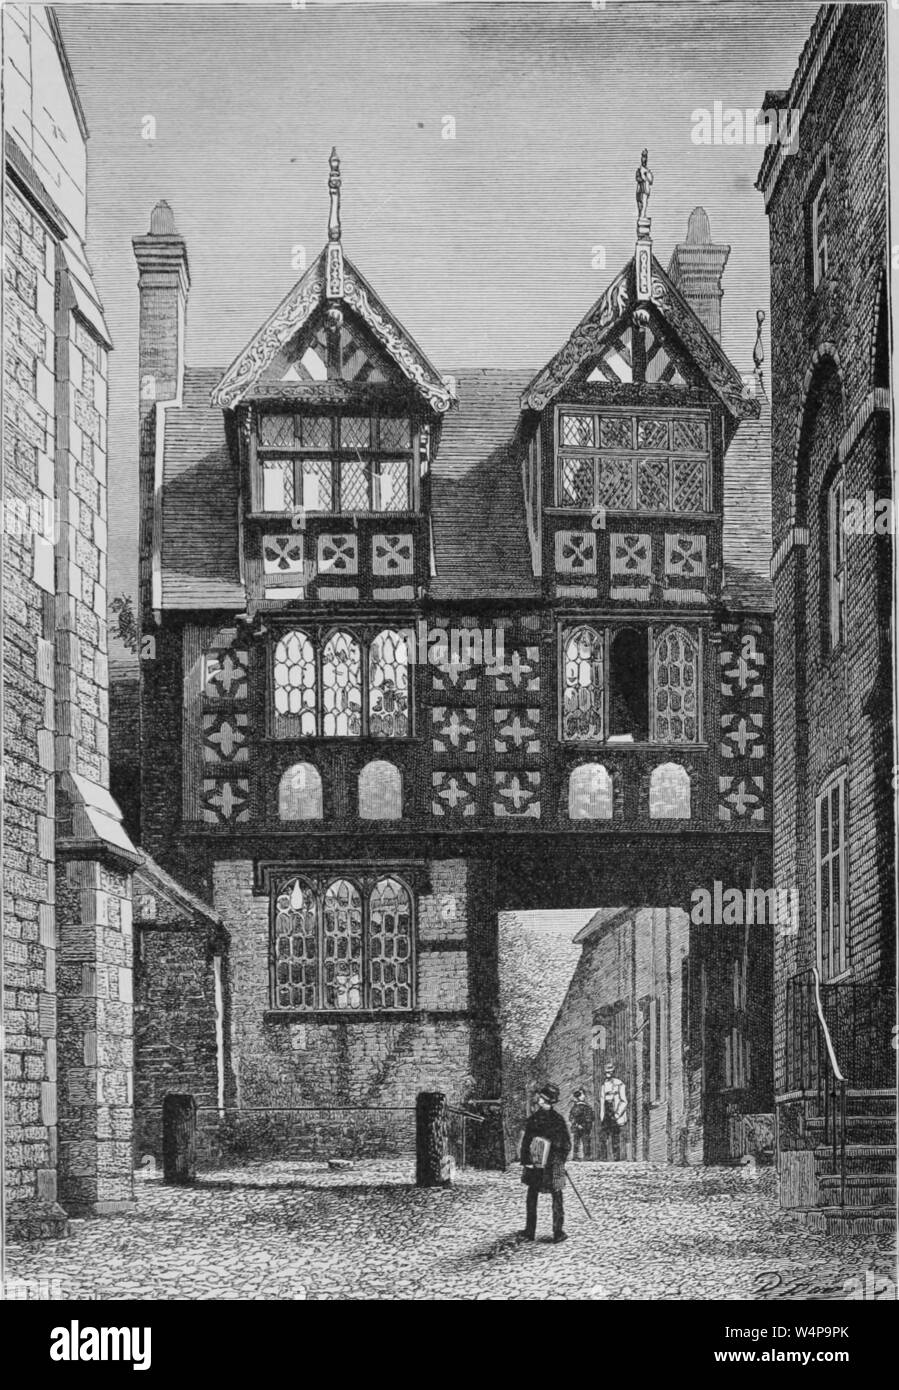 Incisione di sedici secolo la casa a Shrewsbury, Inghilterra, dal libro "La terra e i suoi abitanti " da Elisee Reclus, 1881. La cortesia Internet Archive. () Foto Stock